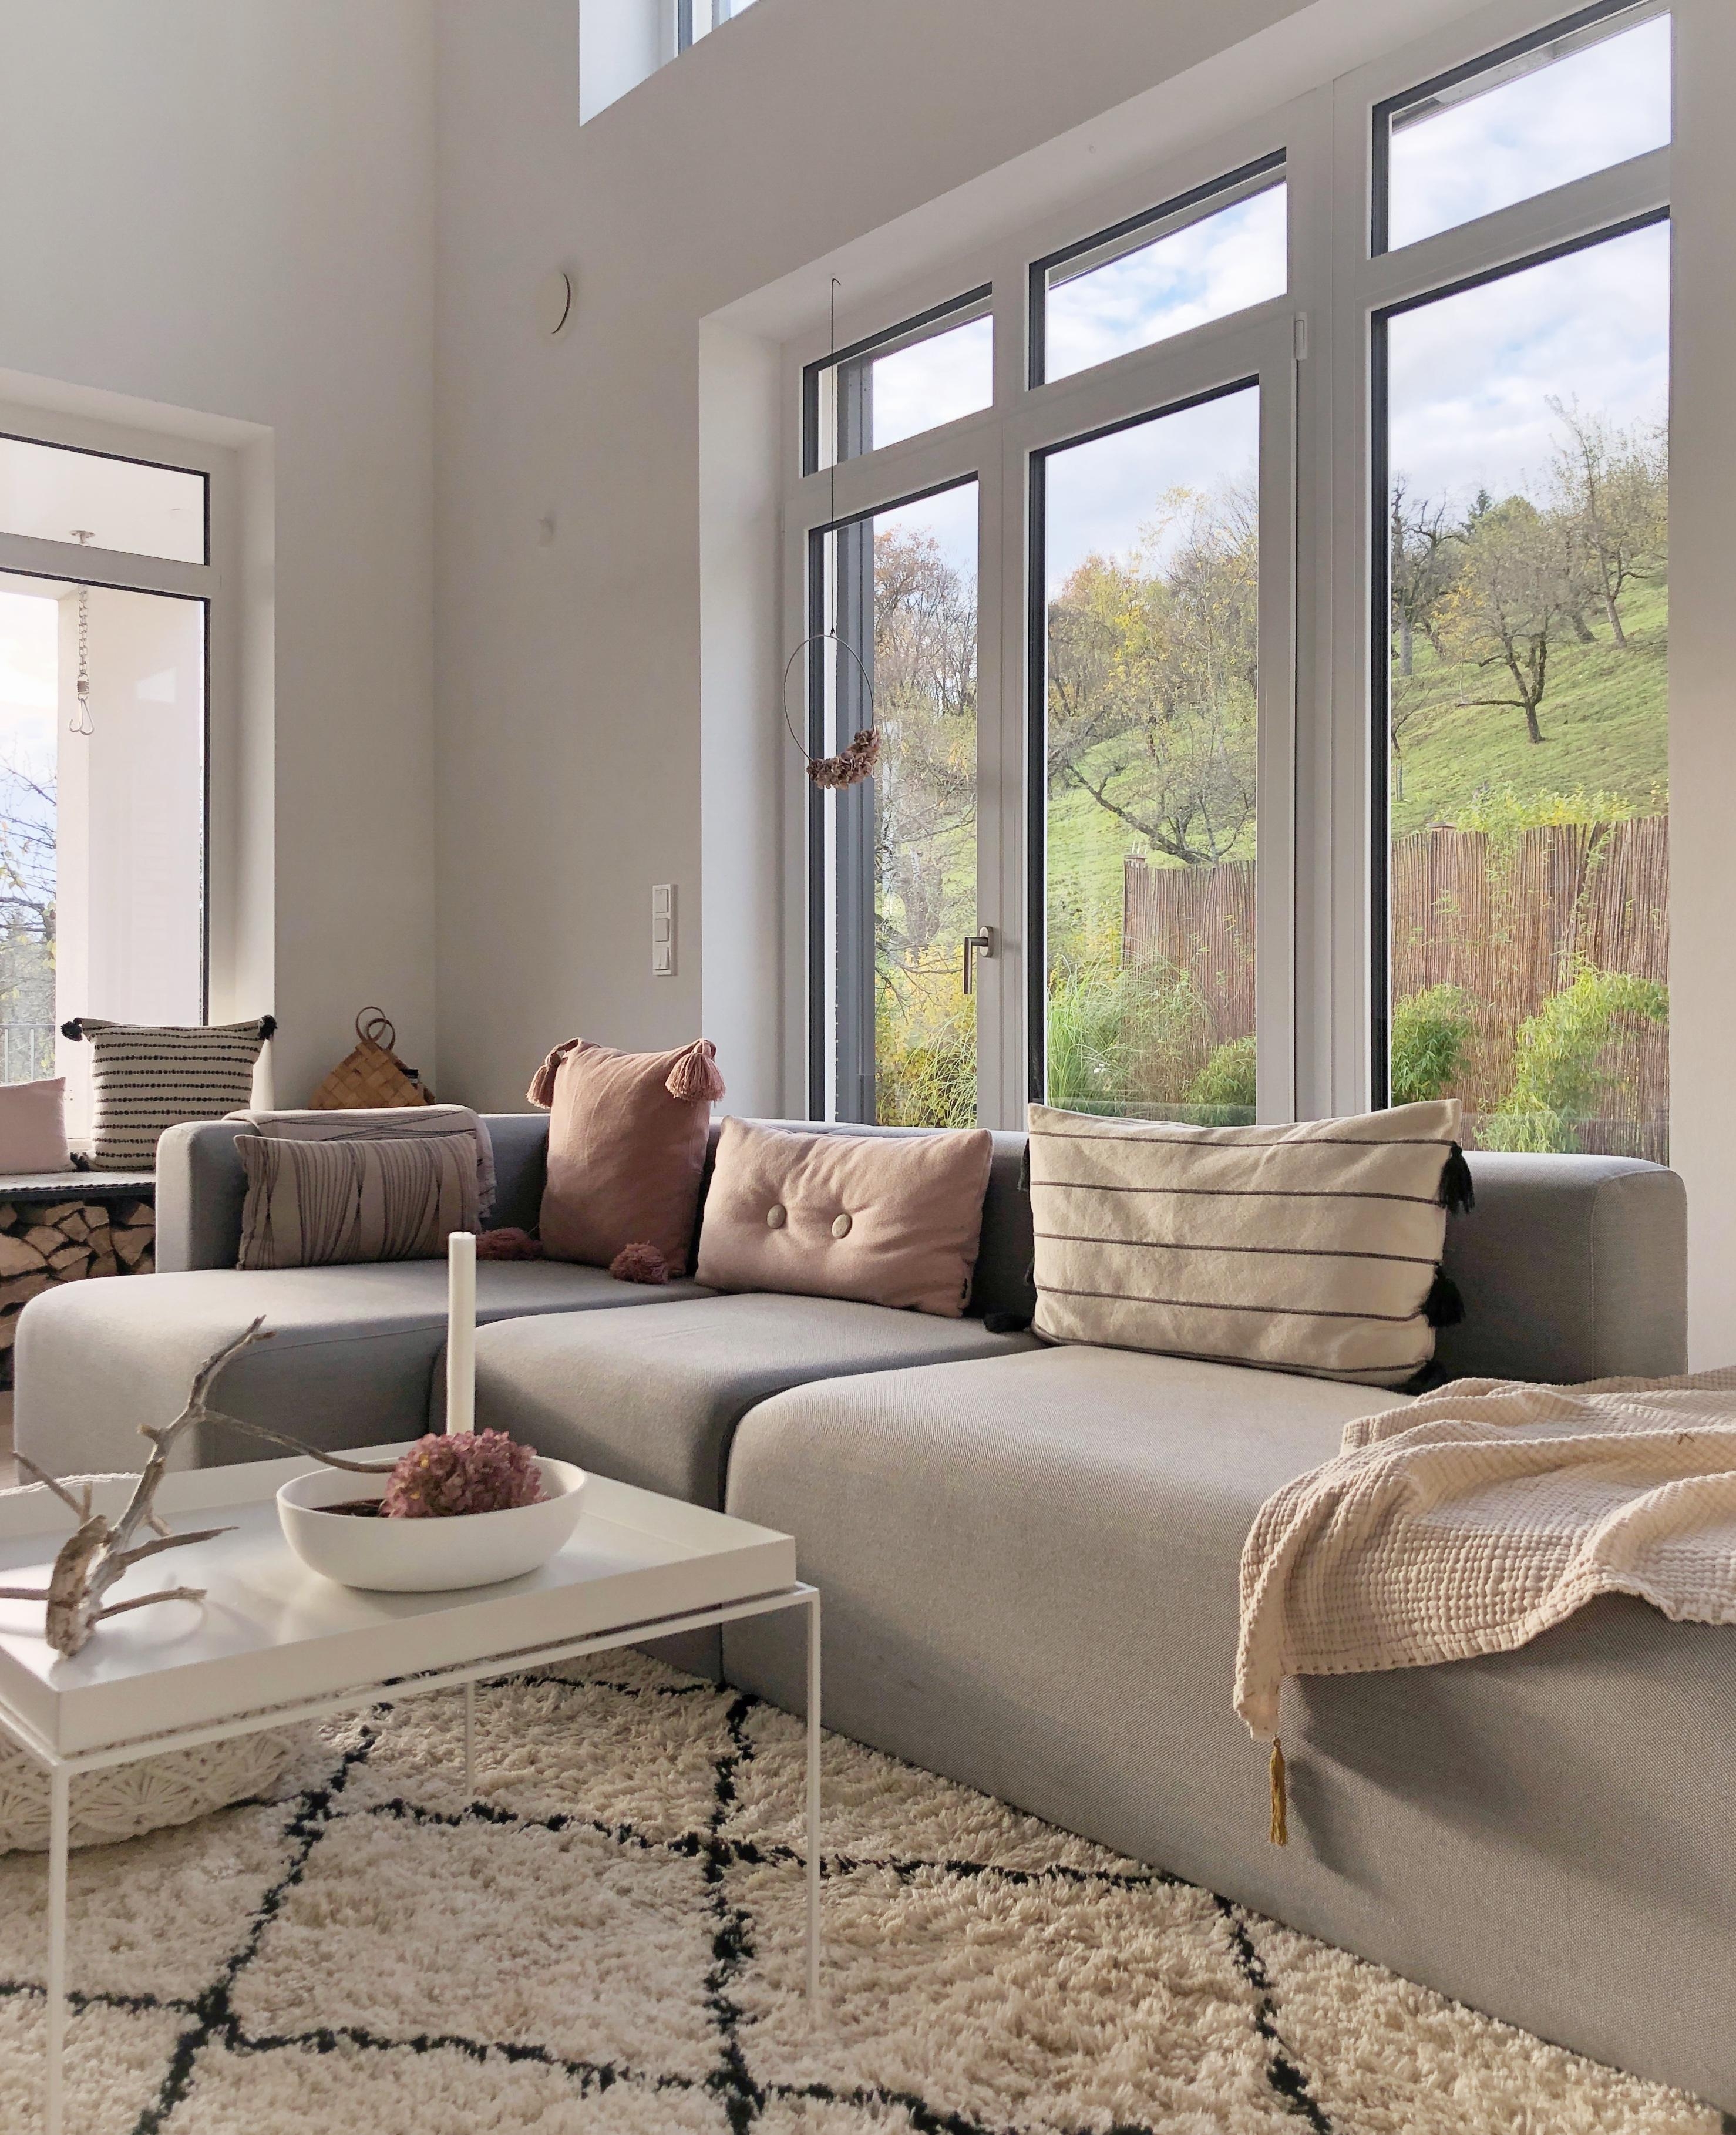 Herbstsonne im Wohnzimmer🍂
#wohnzimmer#livingroom#wohnzimmerdekoration#Inspiration#whitehome